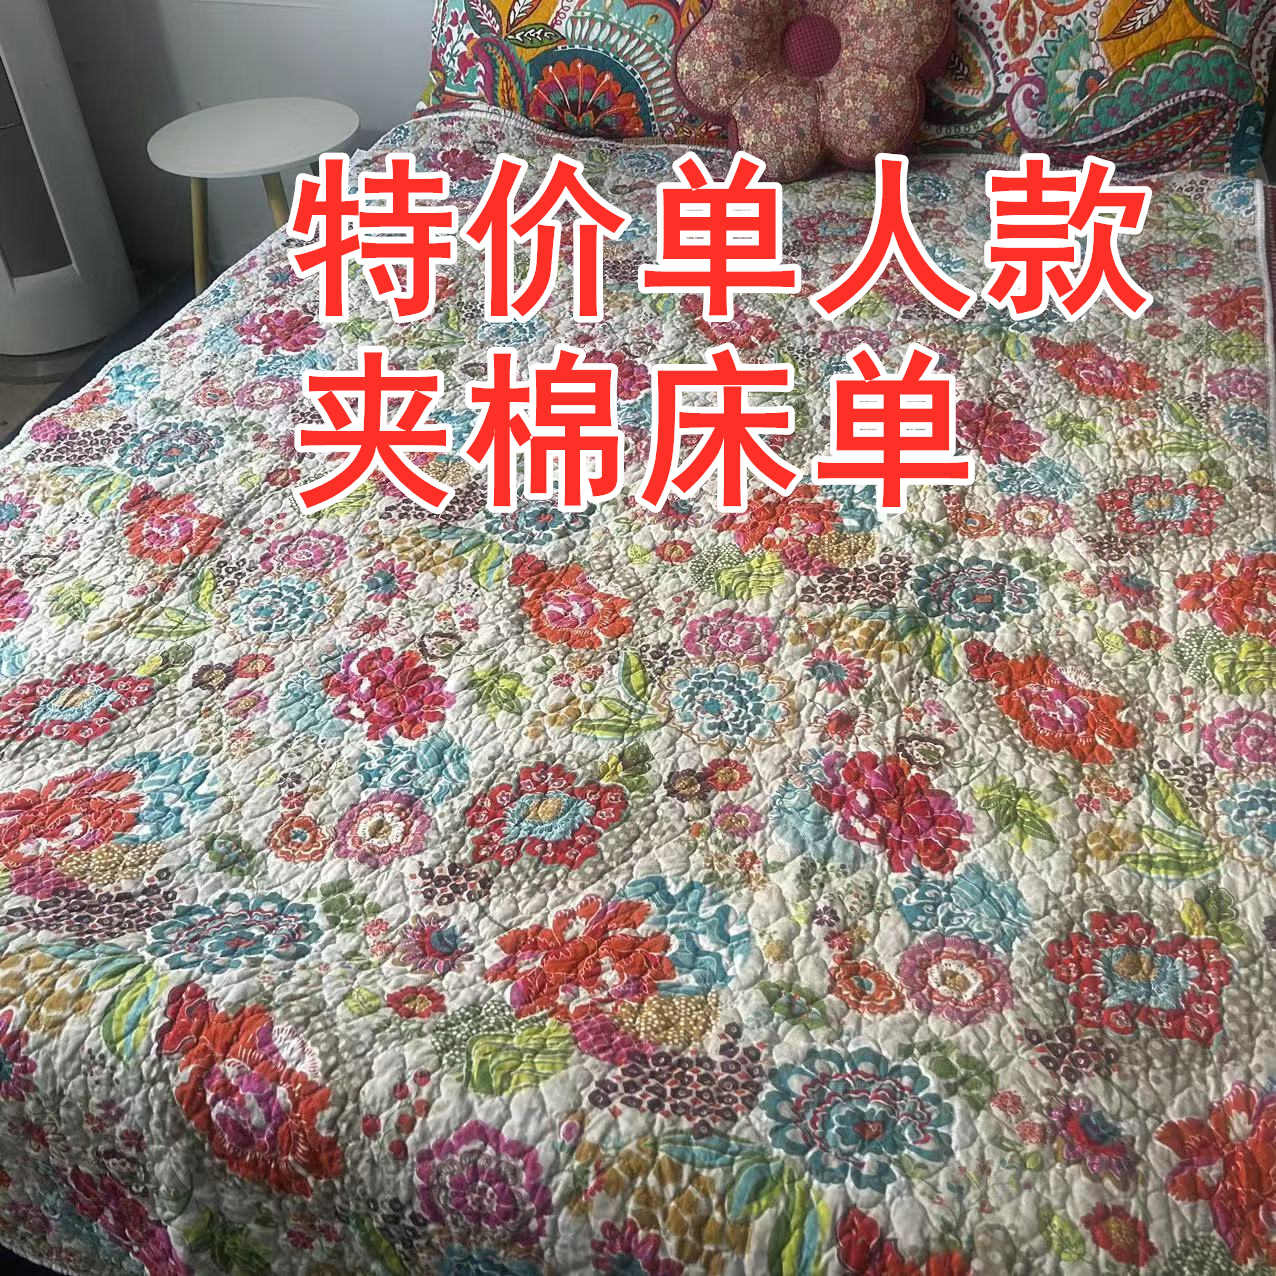 特价双面纯棉绗缝床盖单人款夹棉床单床垫子褥子可铺可盖水洗机洗